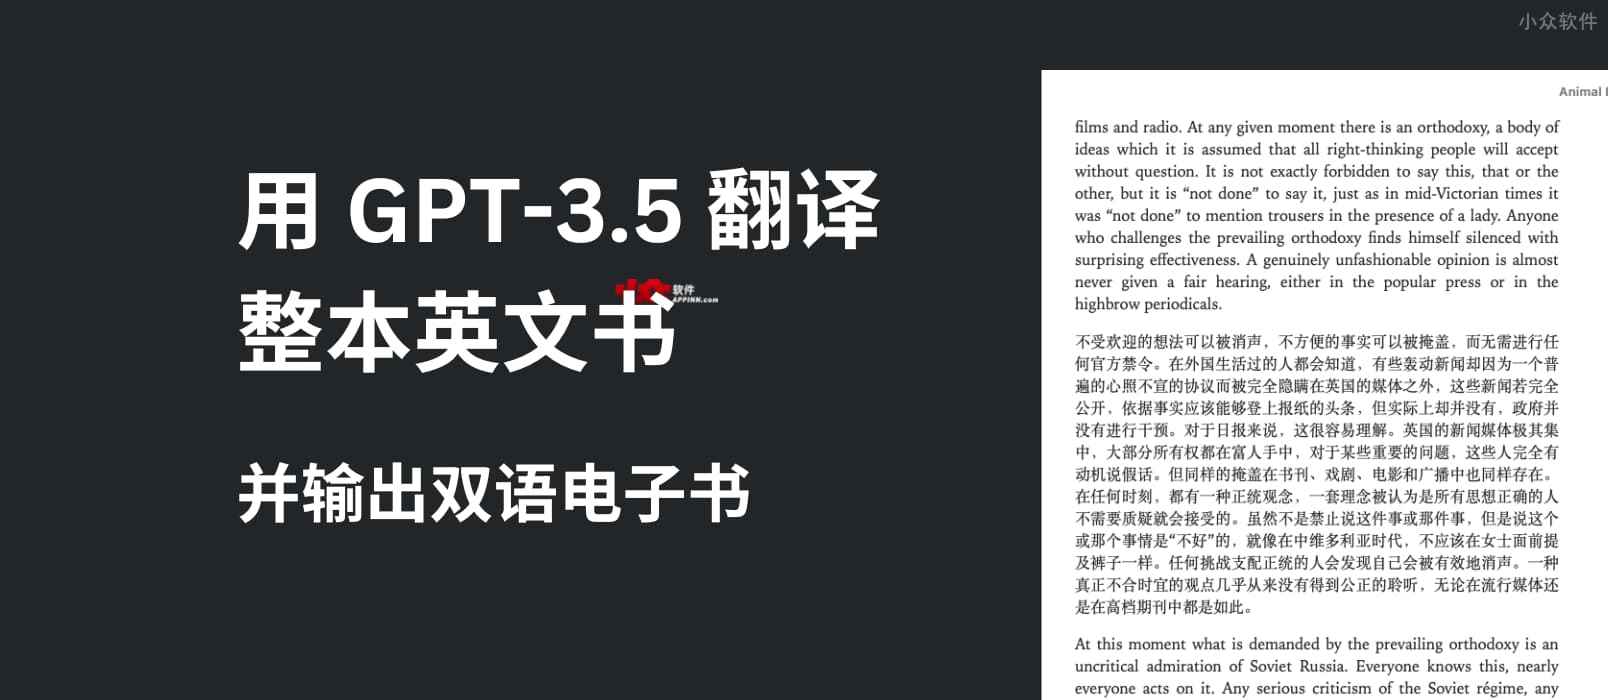 用 GPT-3.5 翻译整本英文书，输出中英双语电子书 1